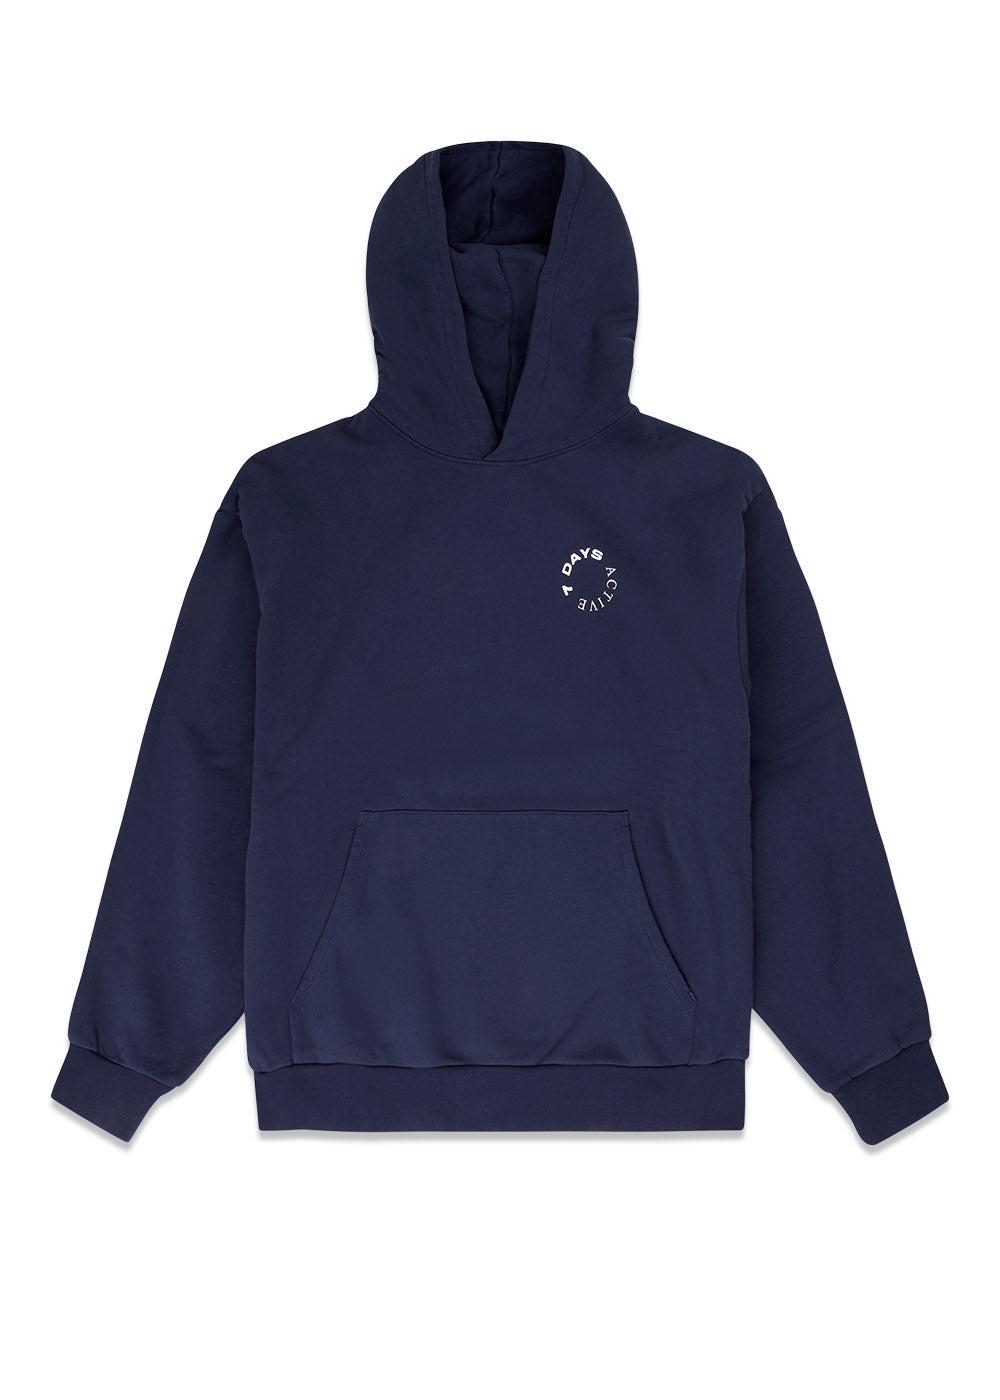 7 Days' Organic Hoodie - Navy. Køb hoodies her.